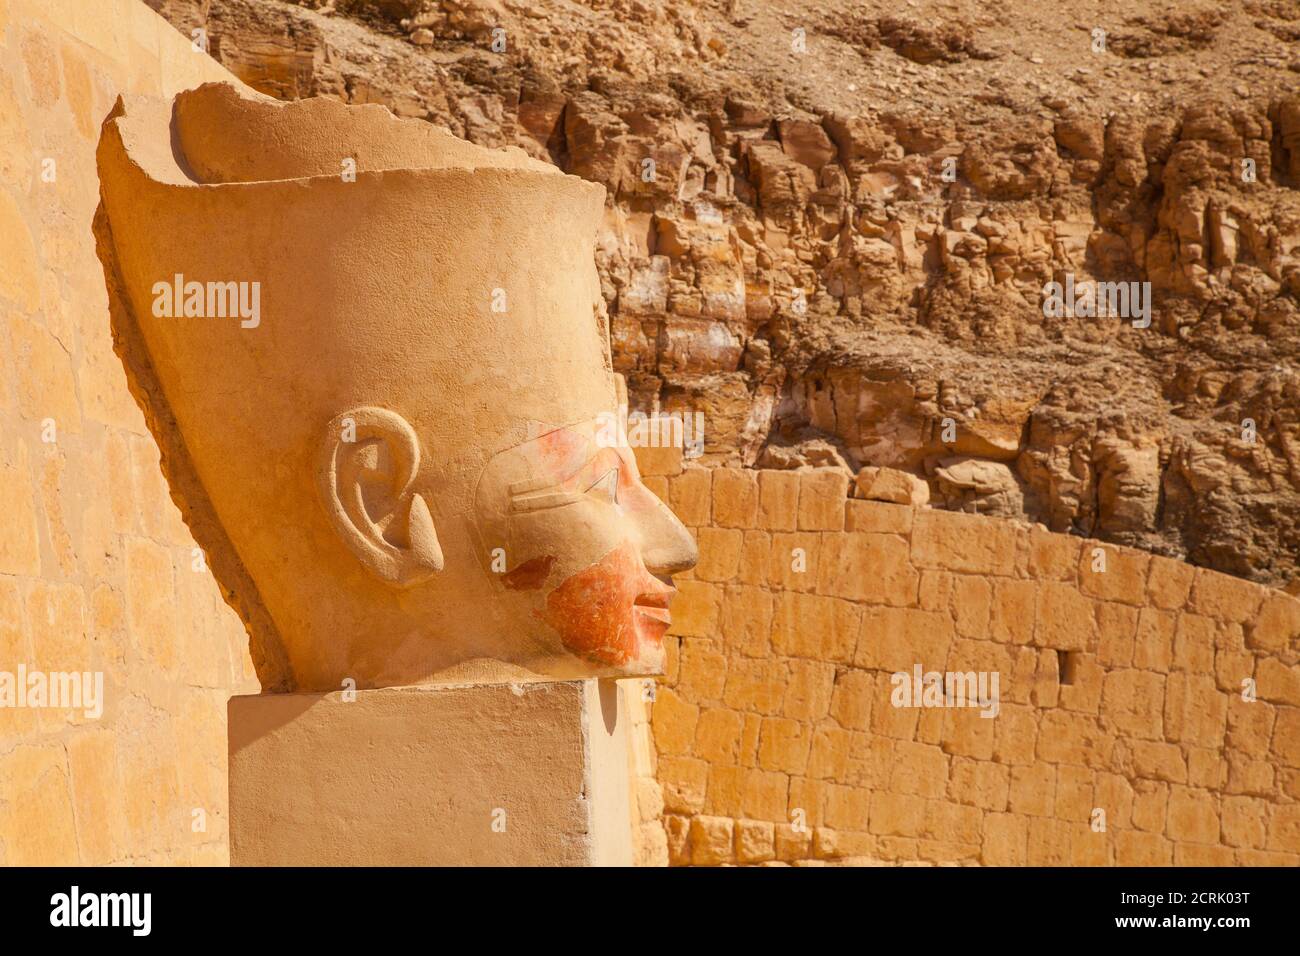 Templo de Hatshepsut, Luxor, Valle del Nilo, Egipto Stock Photo